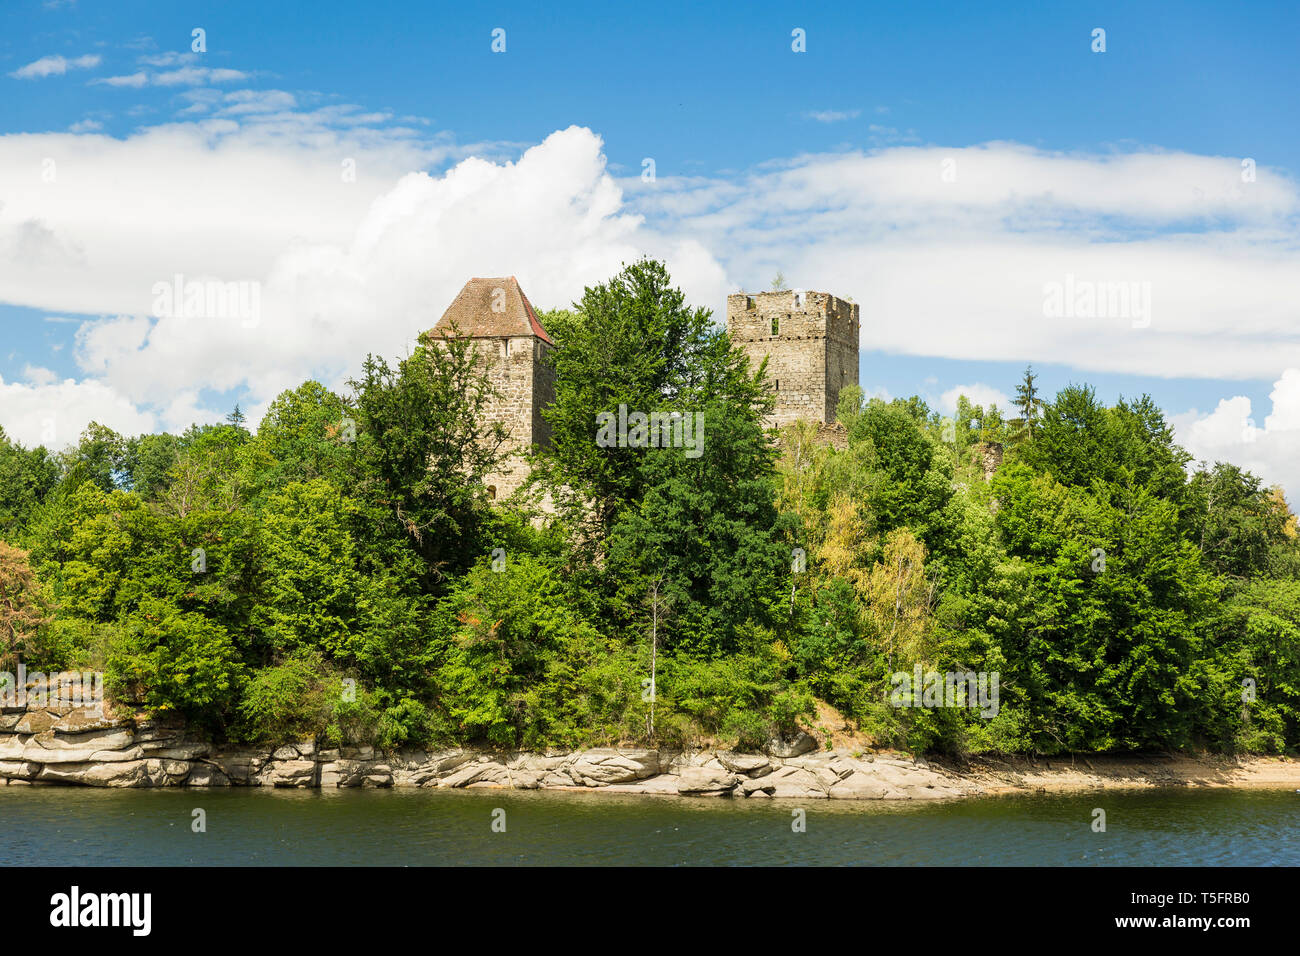 Austria, Lower Austria, Waldviertel, Ottenstein Reservoir, castle Lichtenfels Stock Photo